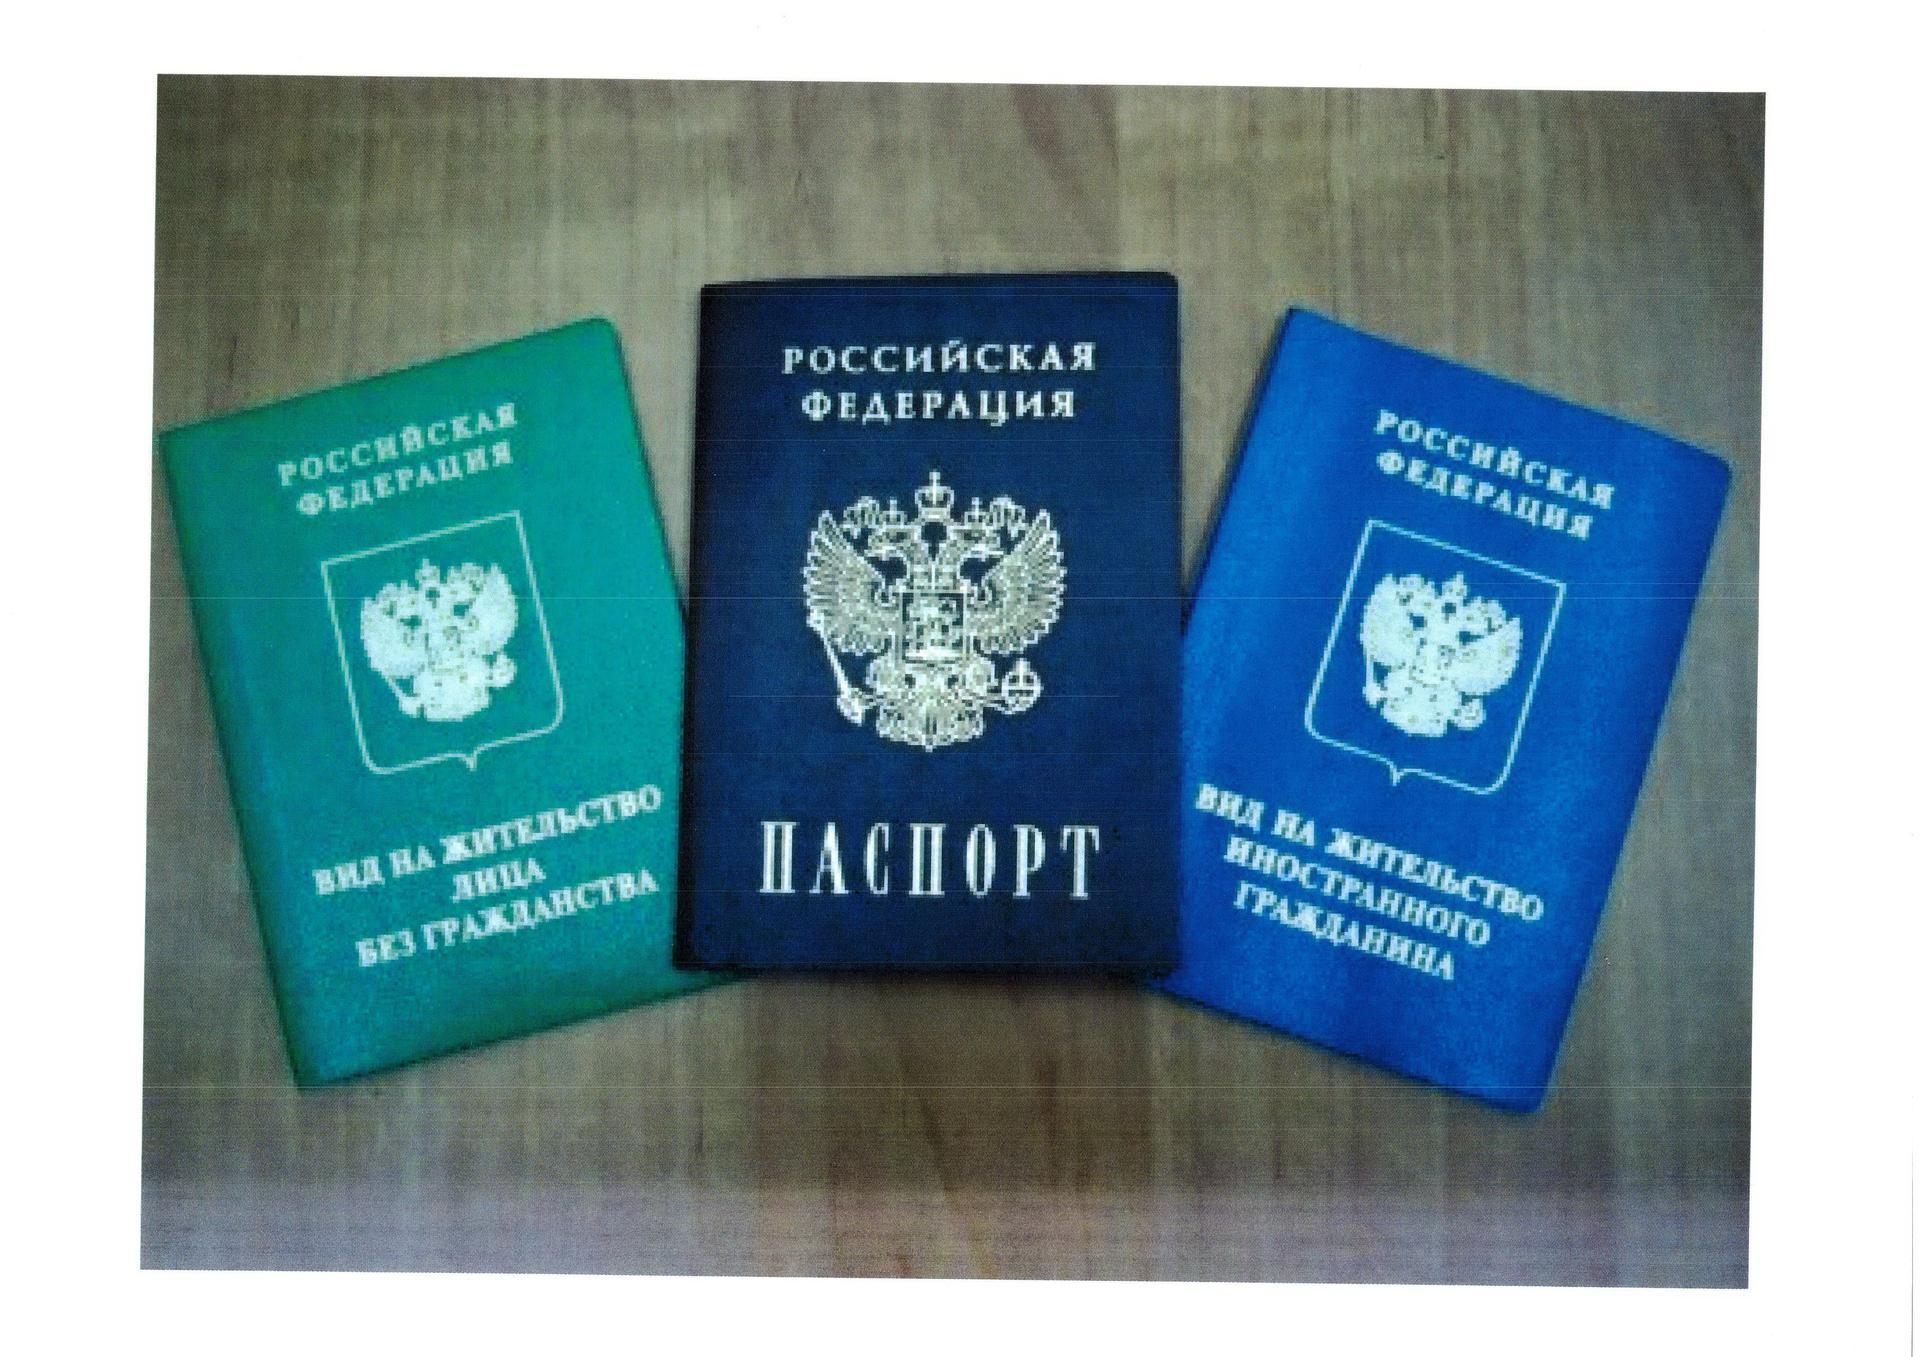 Ли видом жительство. Вид на жительство в России. Паспорт вид на жительство в России. Паспорт РФ И вид на жительство. Паспорт вид на жительство иностранного гражданина в РФ.